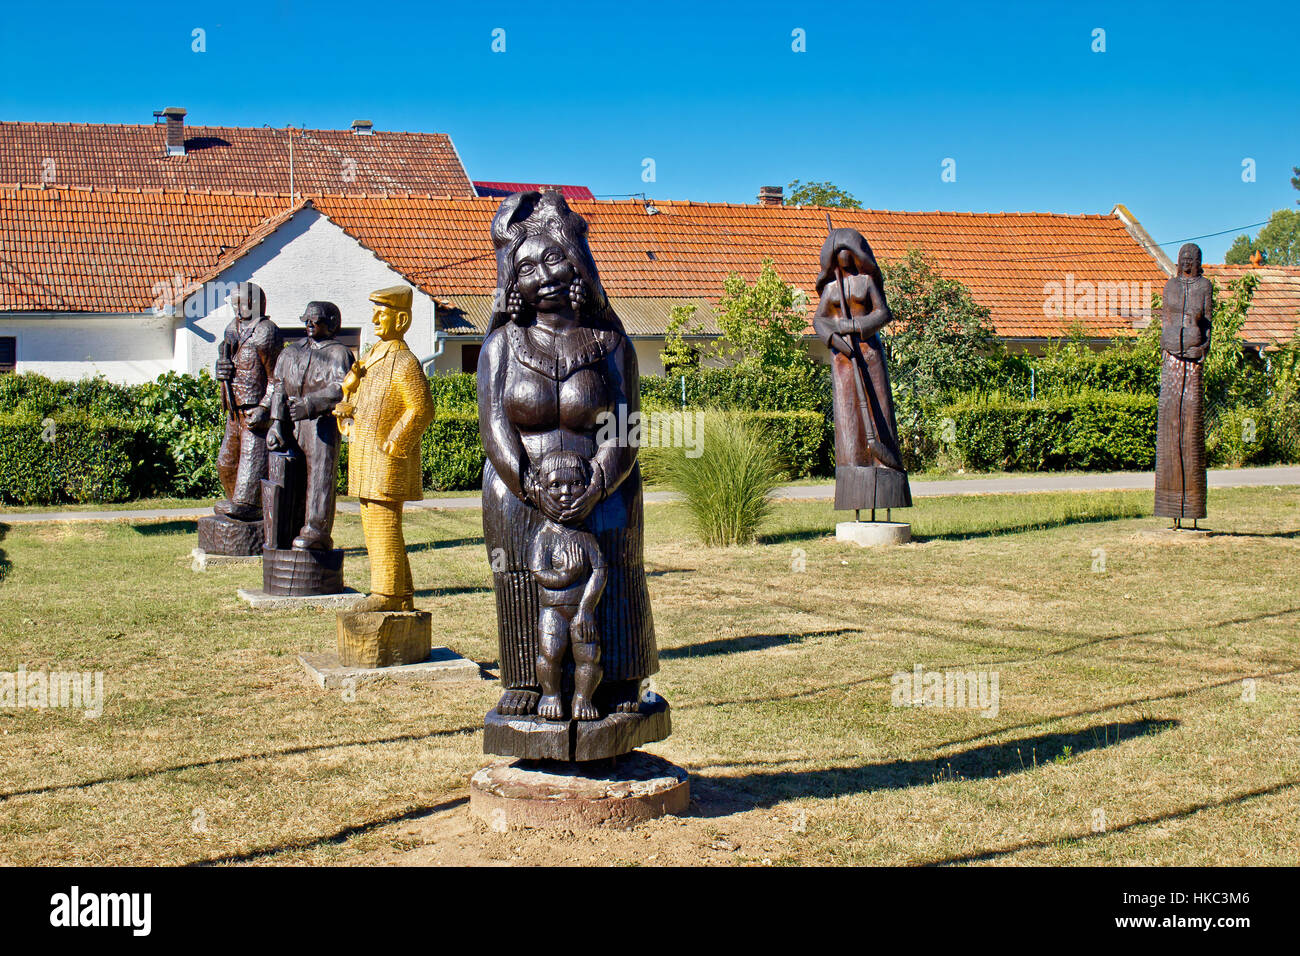 Village de Hlebine des statues en bois, centre d'art naïf en Croatie Banque D'Images